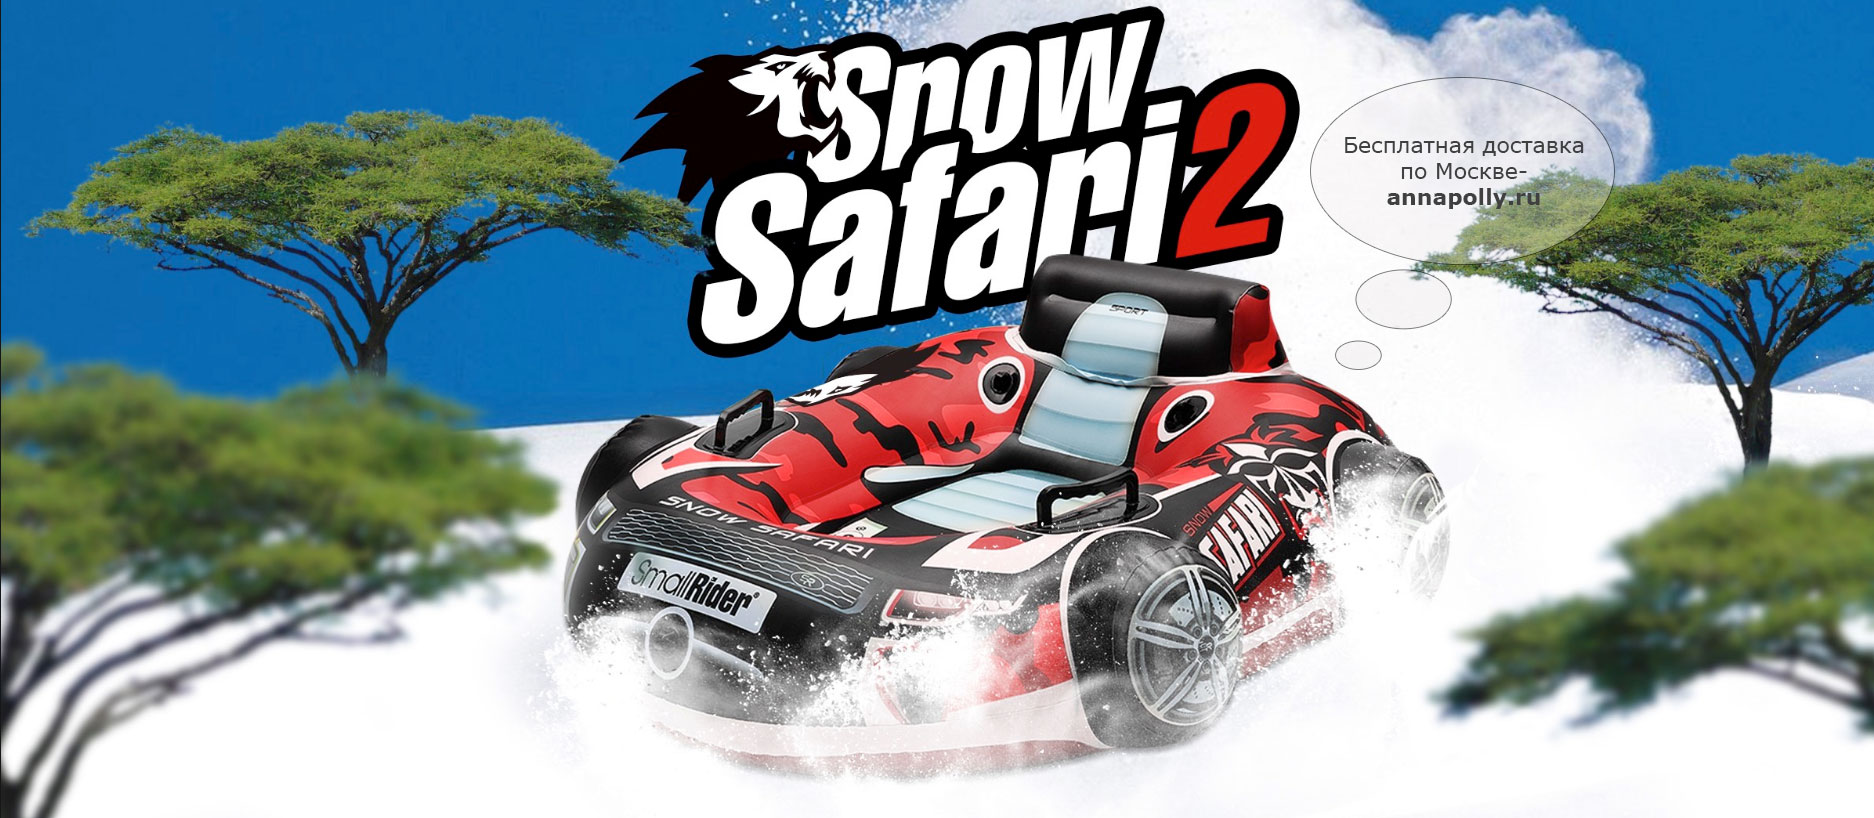 фото Тюбинг бескамерный (надувные санки) Small Rider Snow Safari 2 (Смолл Райдер Сноу Сафари)